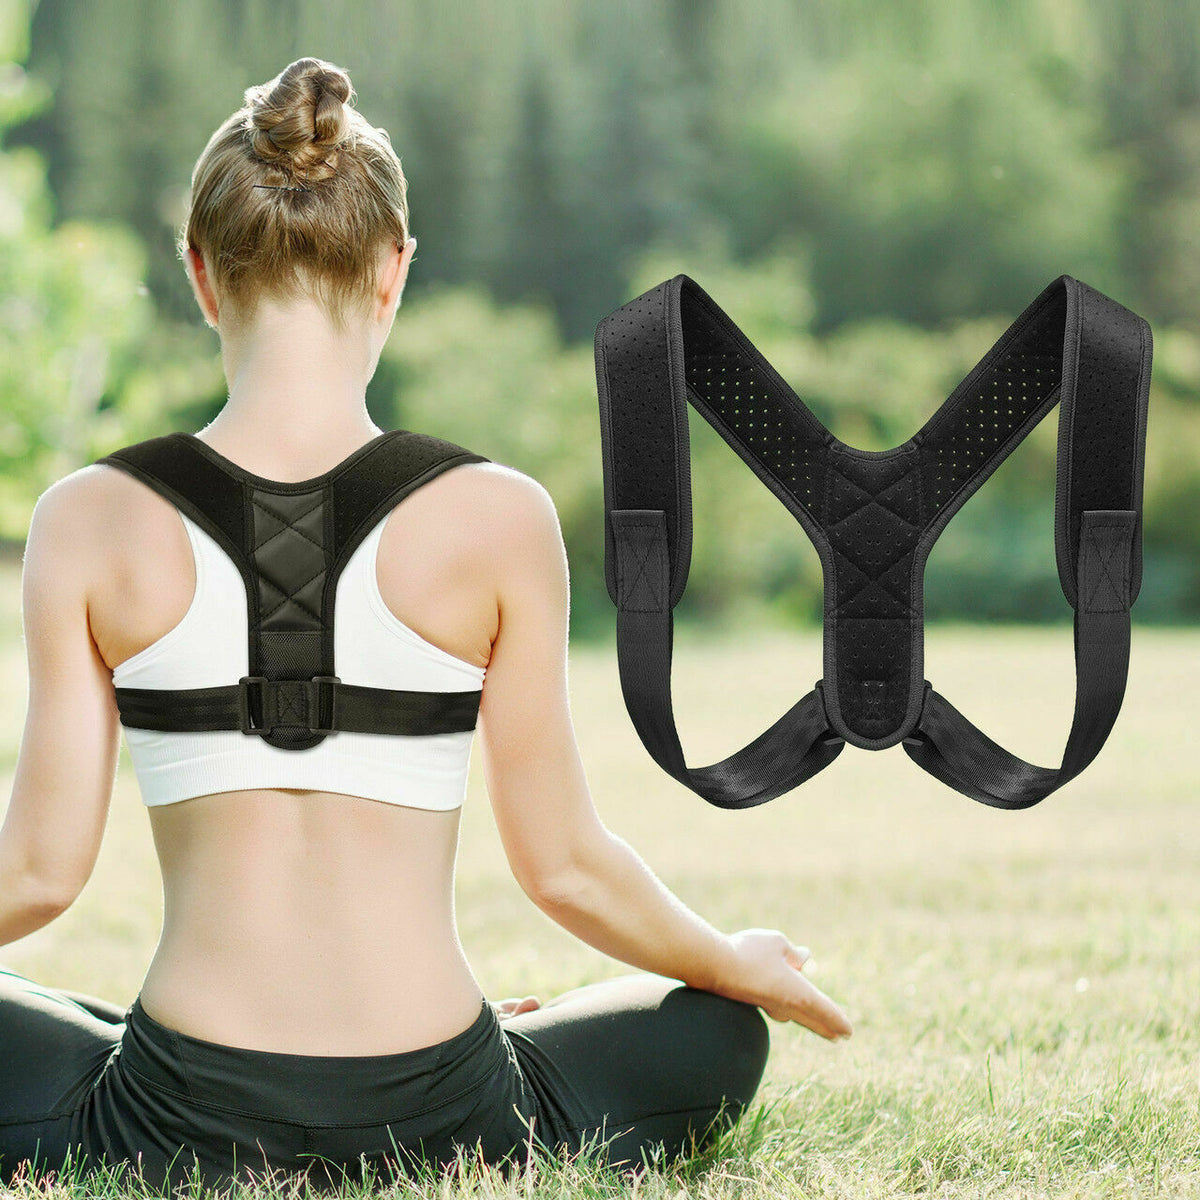 Posture Corrector For Men & Women For Upper Back Pain - Glamour Hills